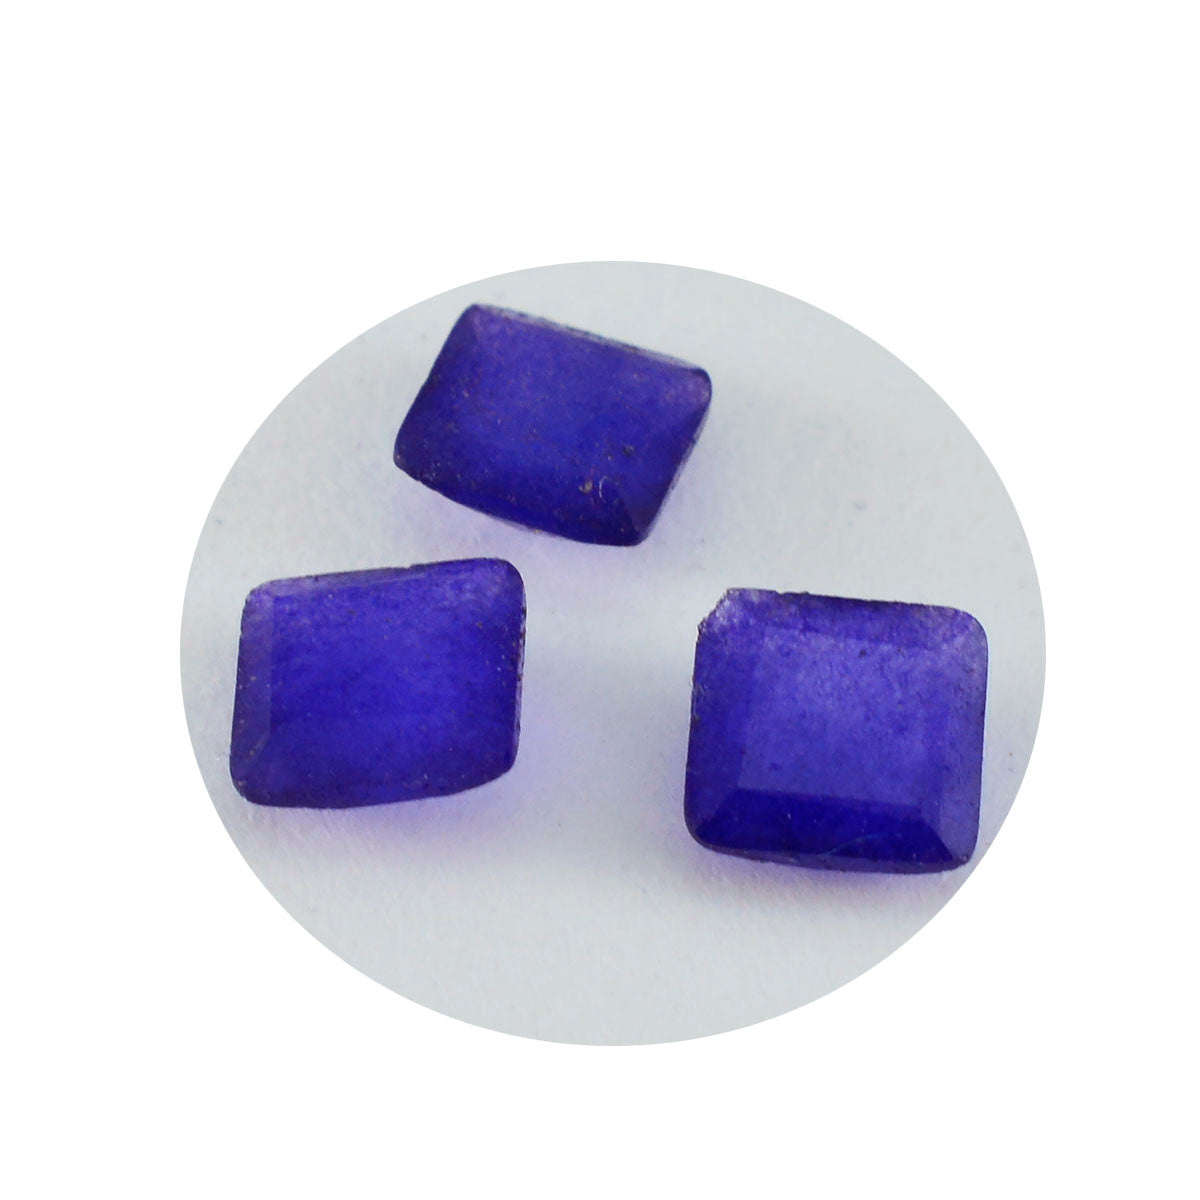 Riyogems 1 Stück natürlicher blauer Jaspis, facettiert, 10 x 10 mm, quadratische Form, gut aussehende Qualitätsedelsteine